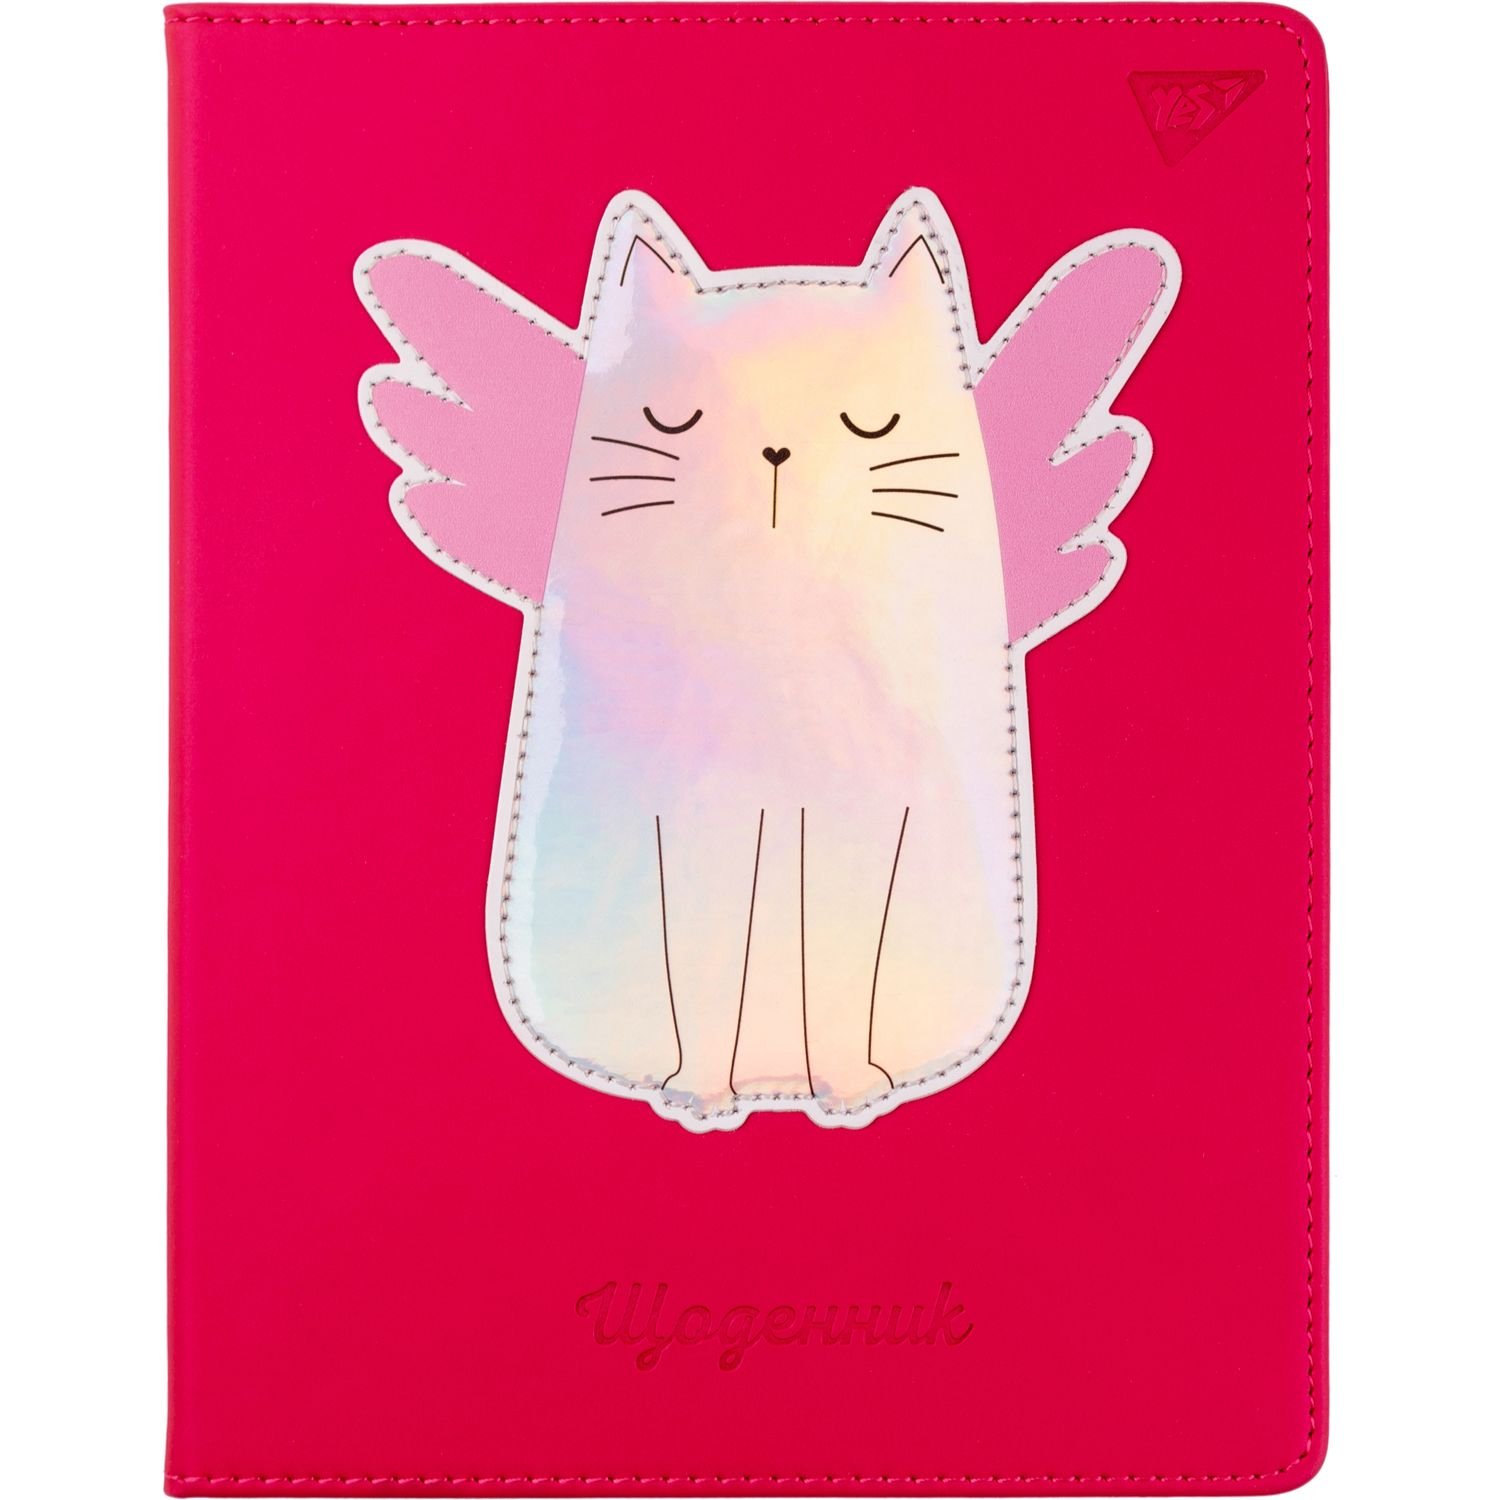 Дневник школьный Yes PU твердый Cat. Angelcat, тиснение, голографическая аппликация с печатью (911401) - фото 1